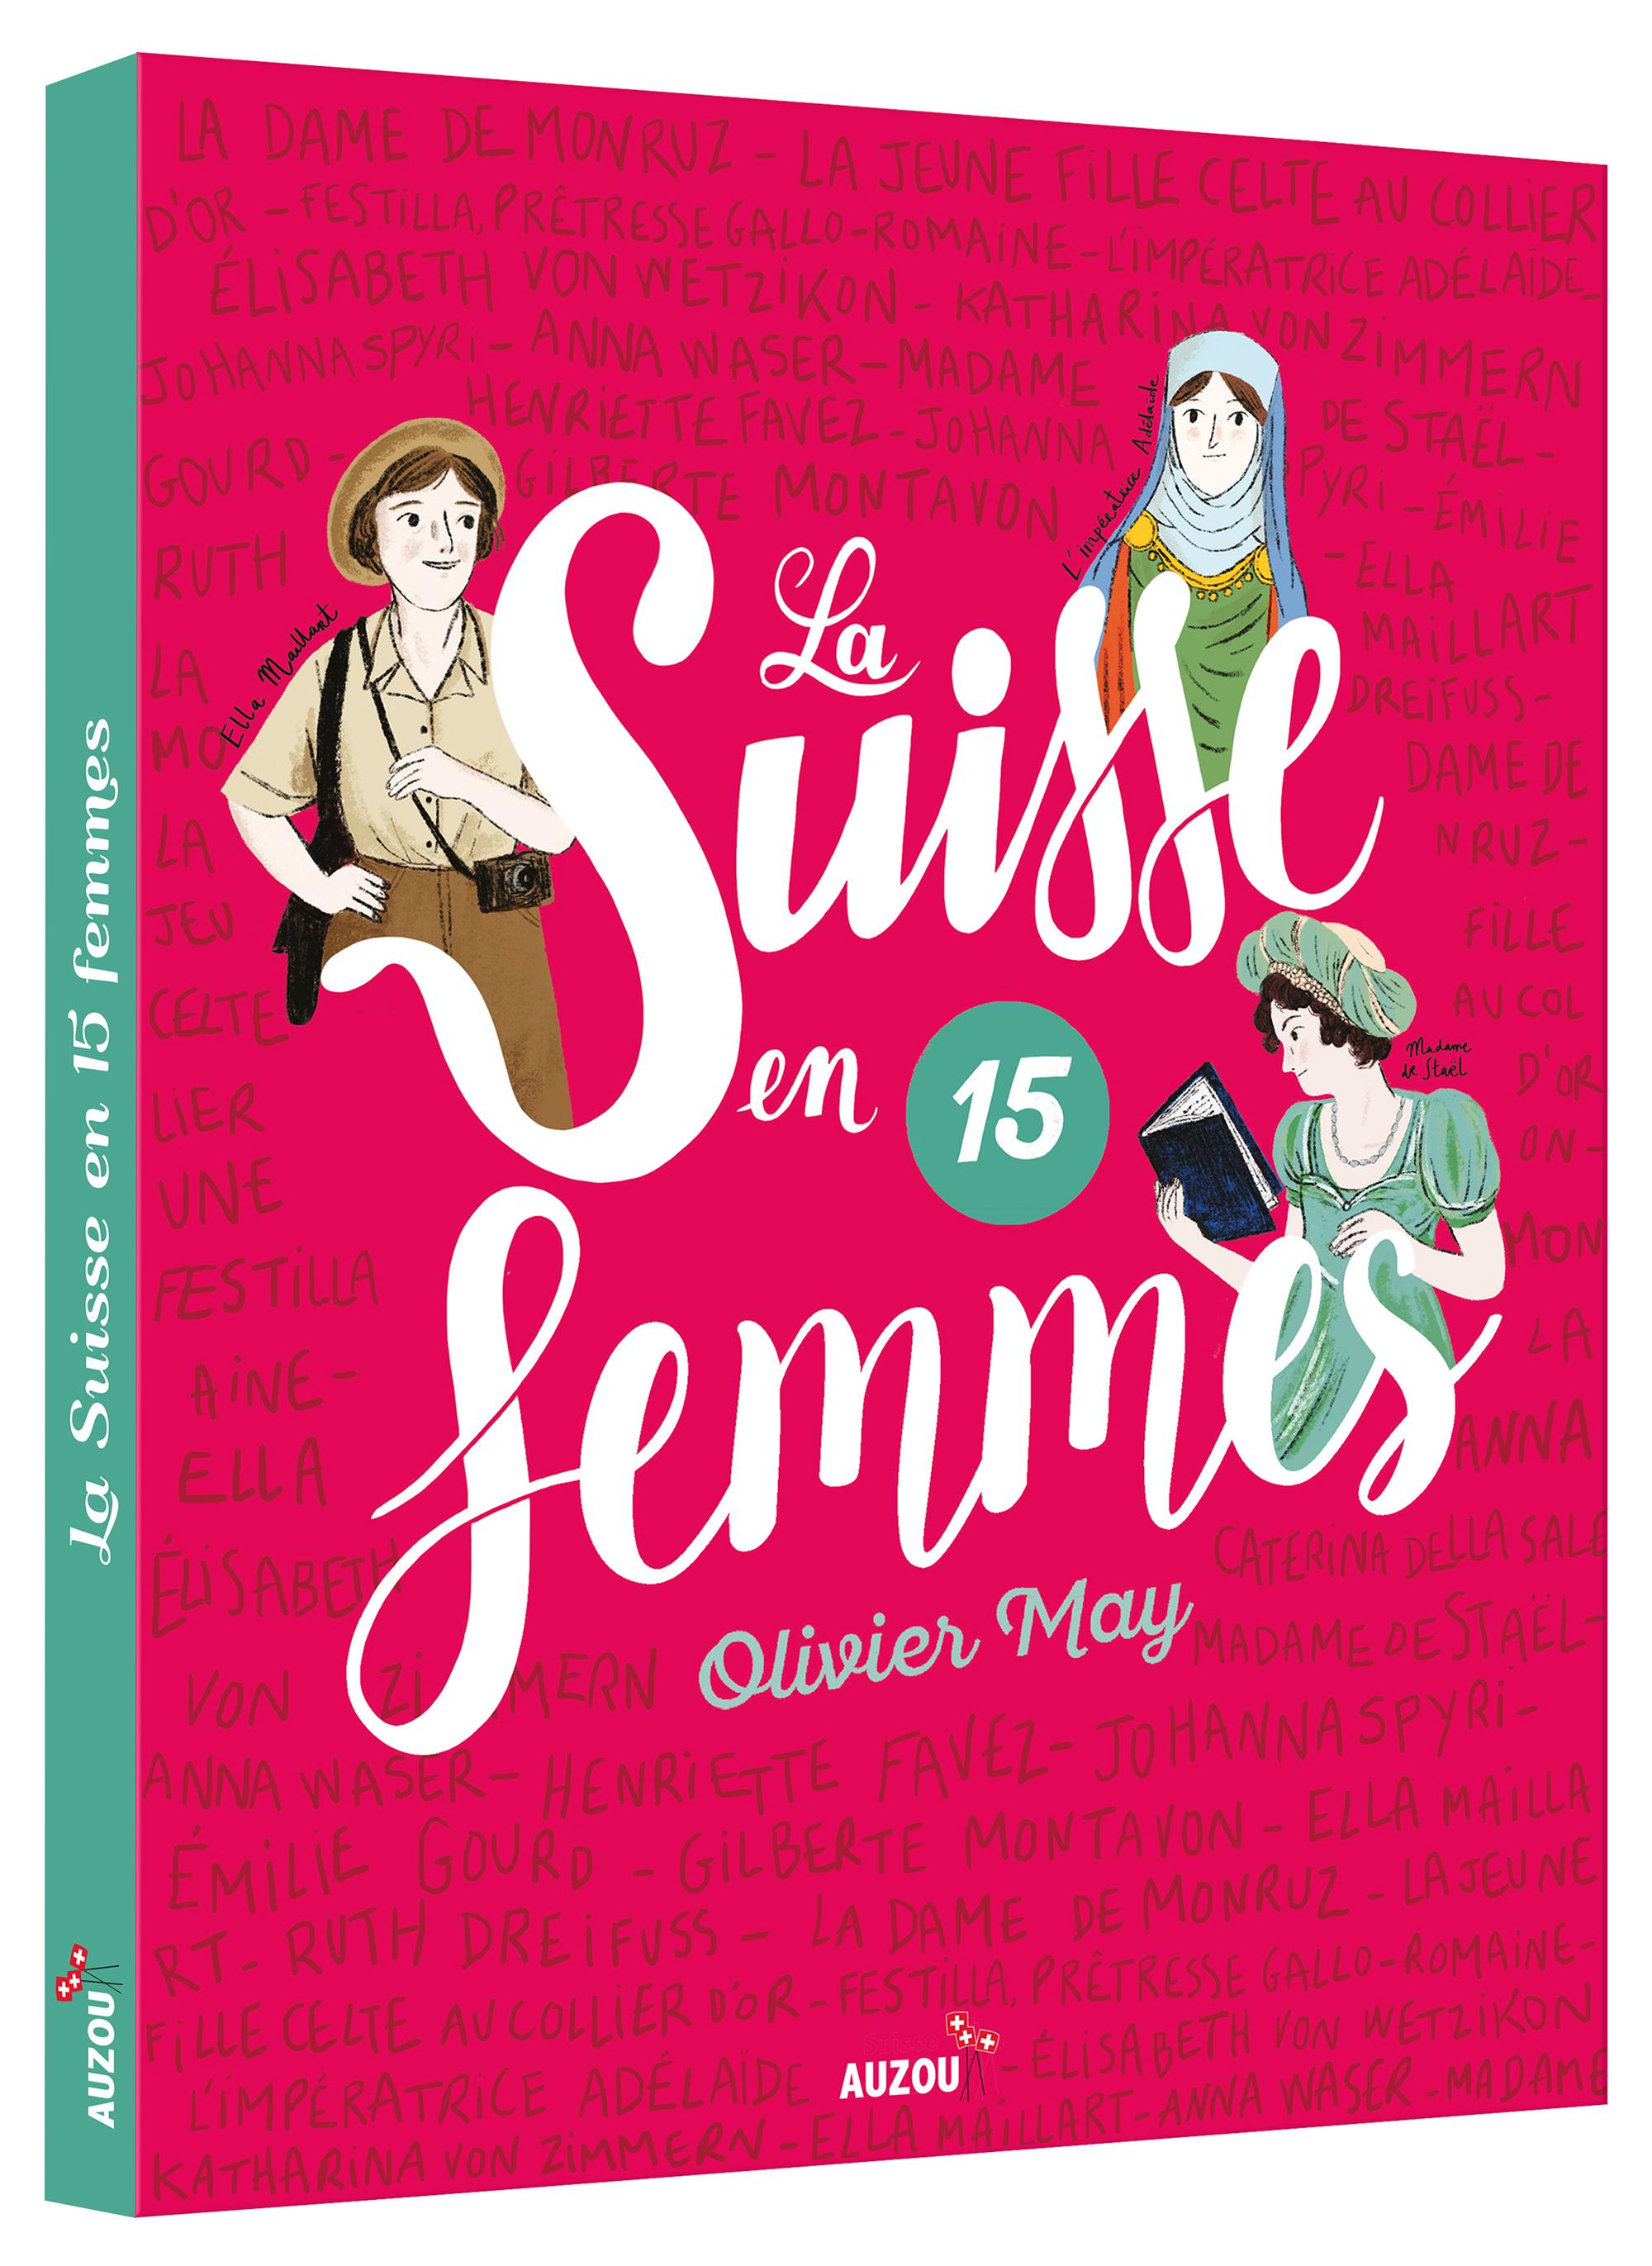 La couverture du livre "La Suisse en 15 femmes". [éditions Auzou]